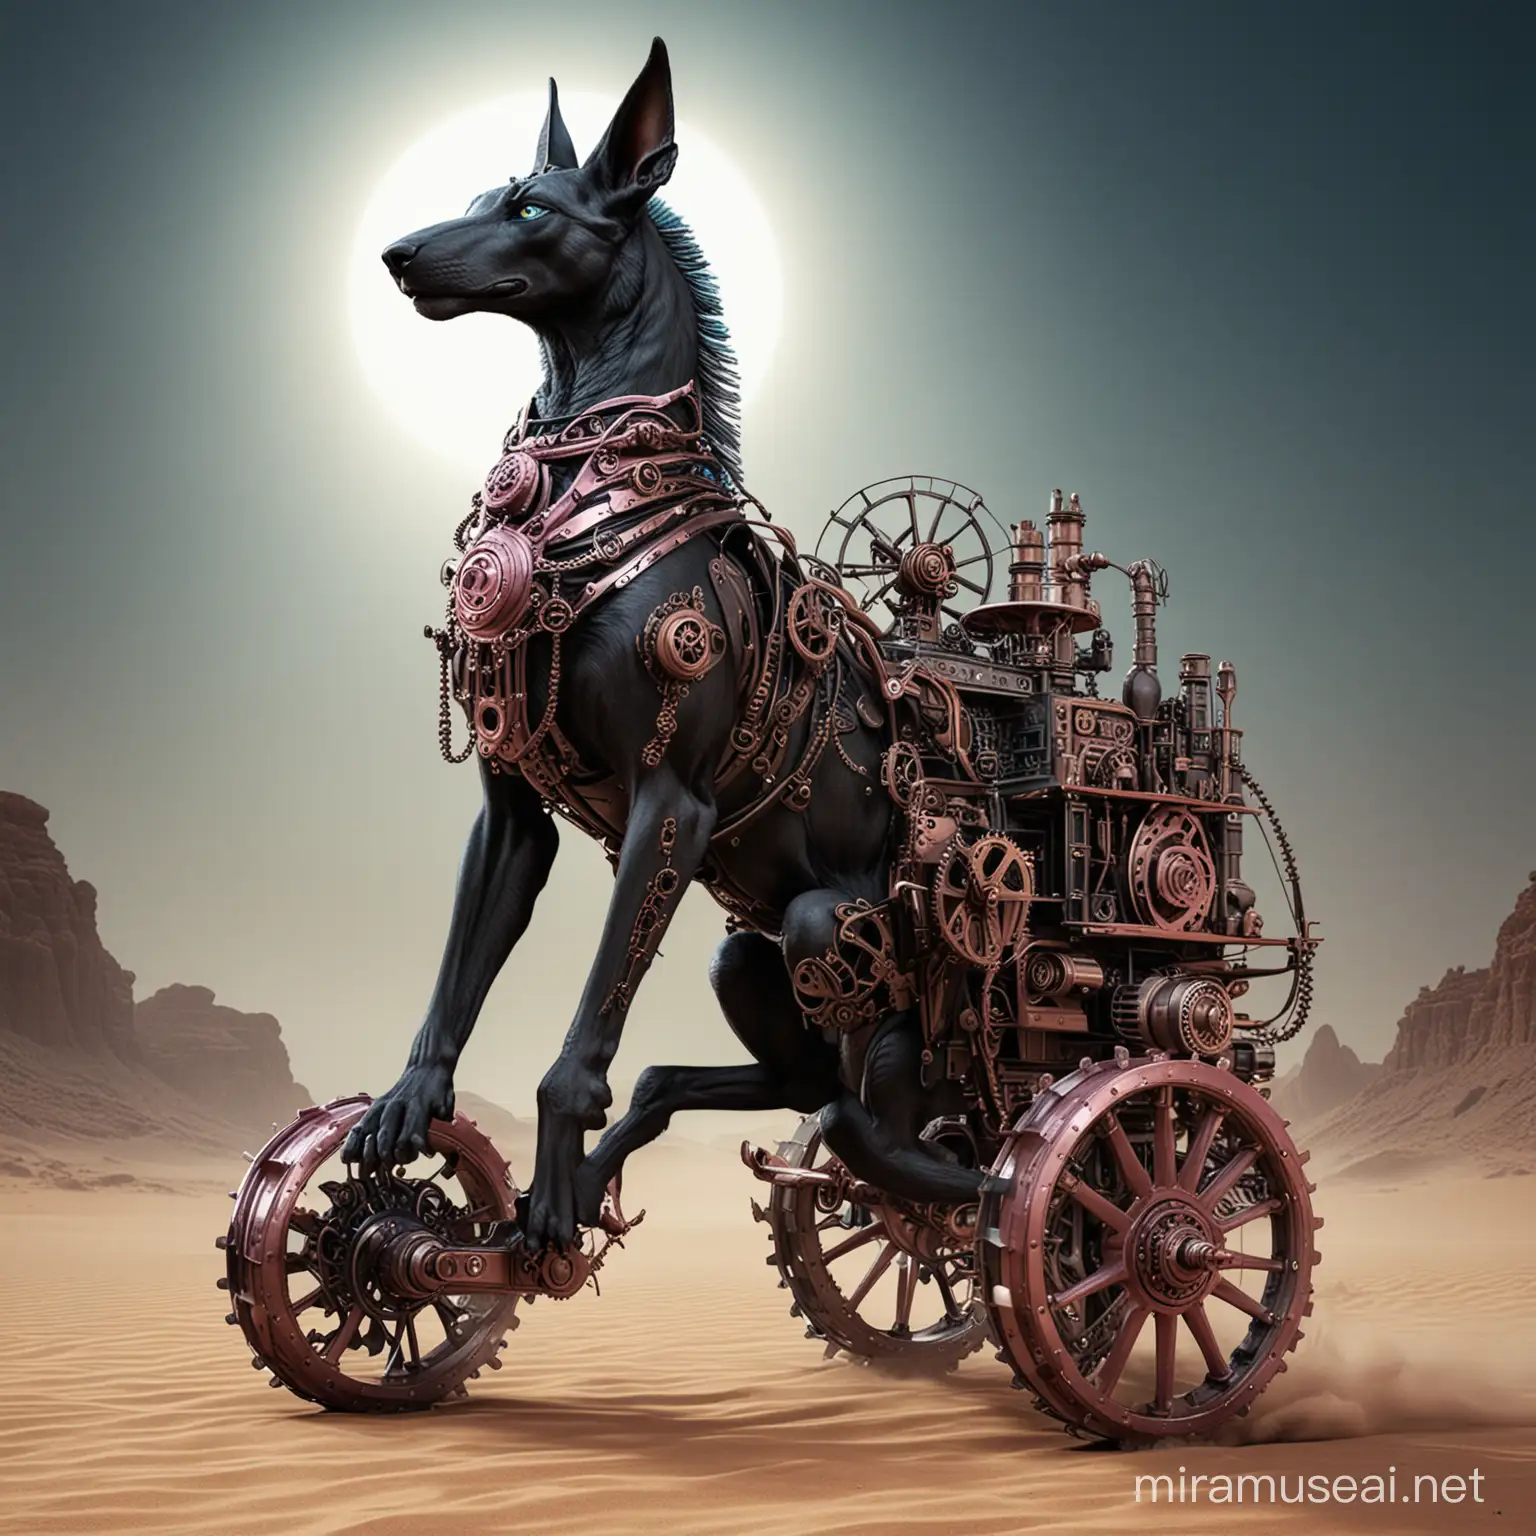 Noir Anubis Riding Clockwork Chariot in Egyptian Desert Race